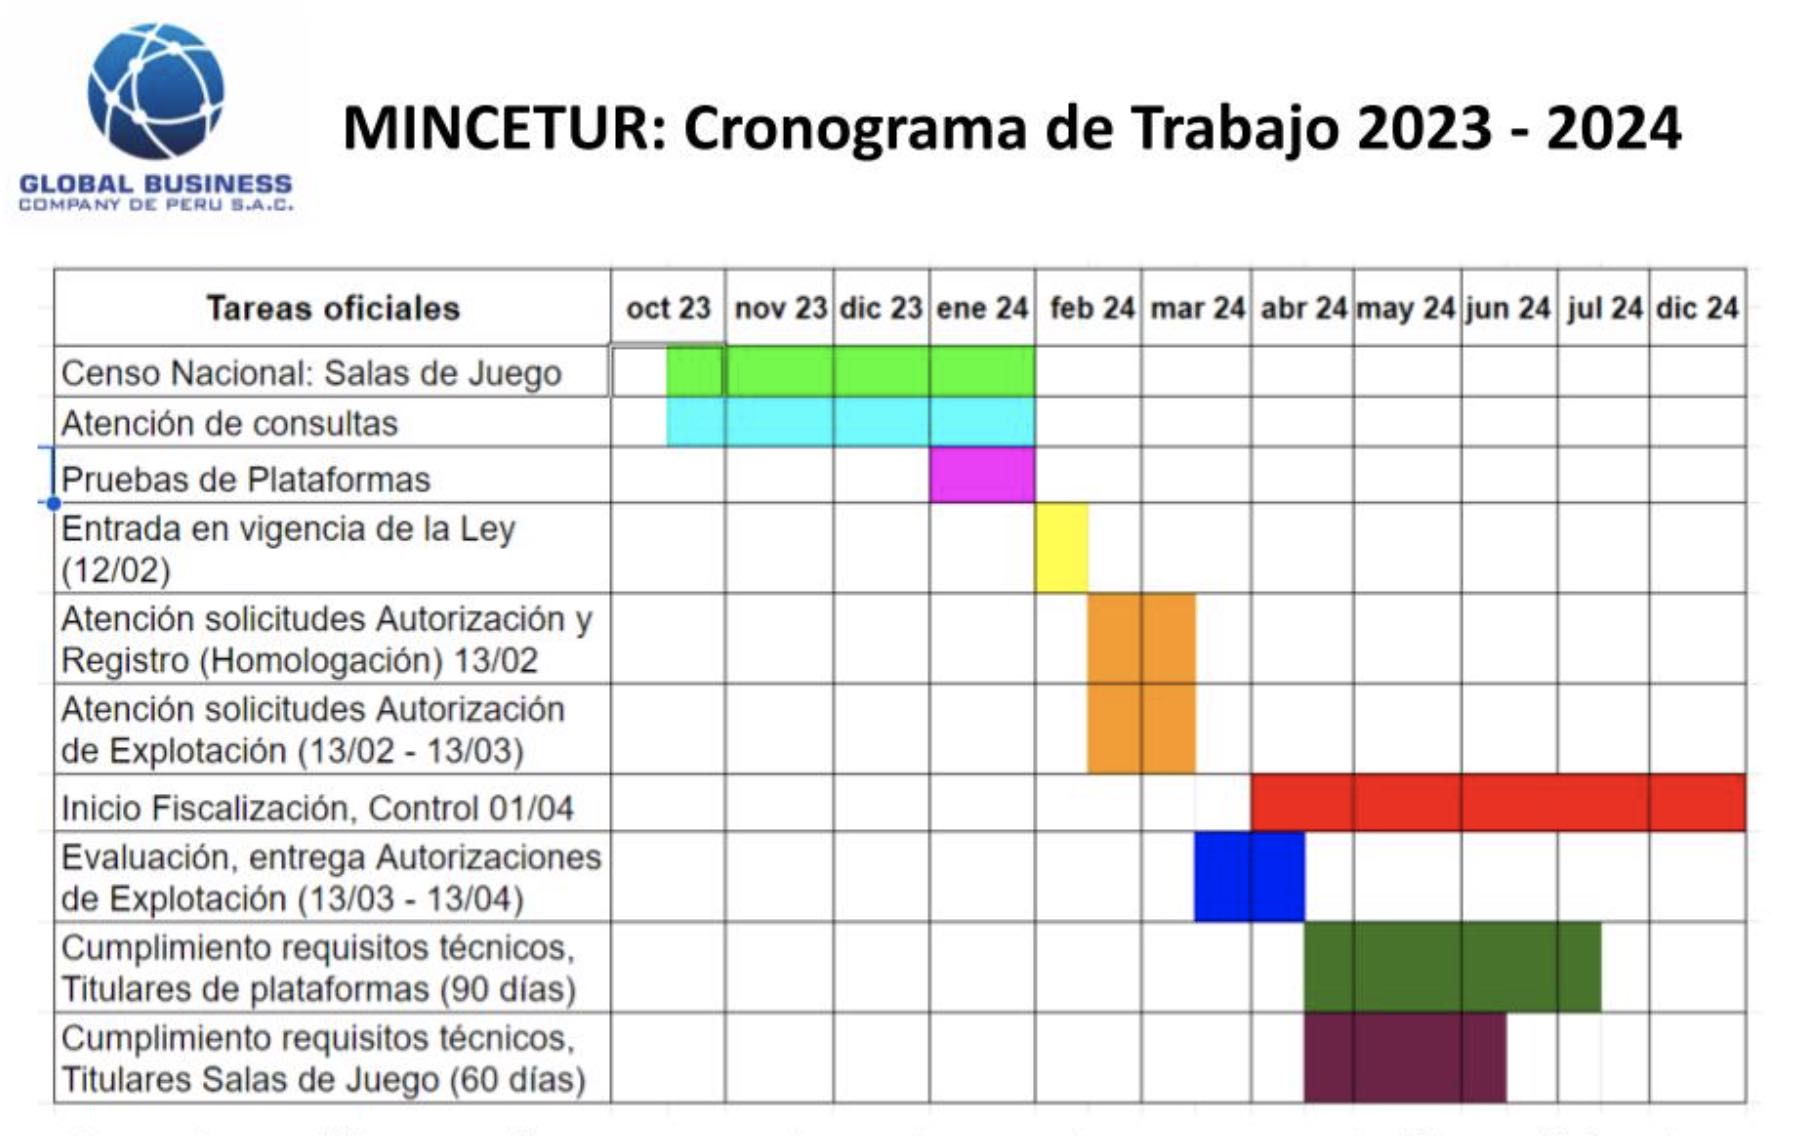 cronograma de trabajo del mincetur 2023-2024